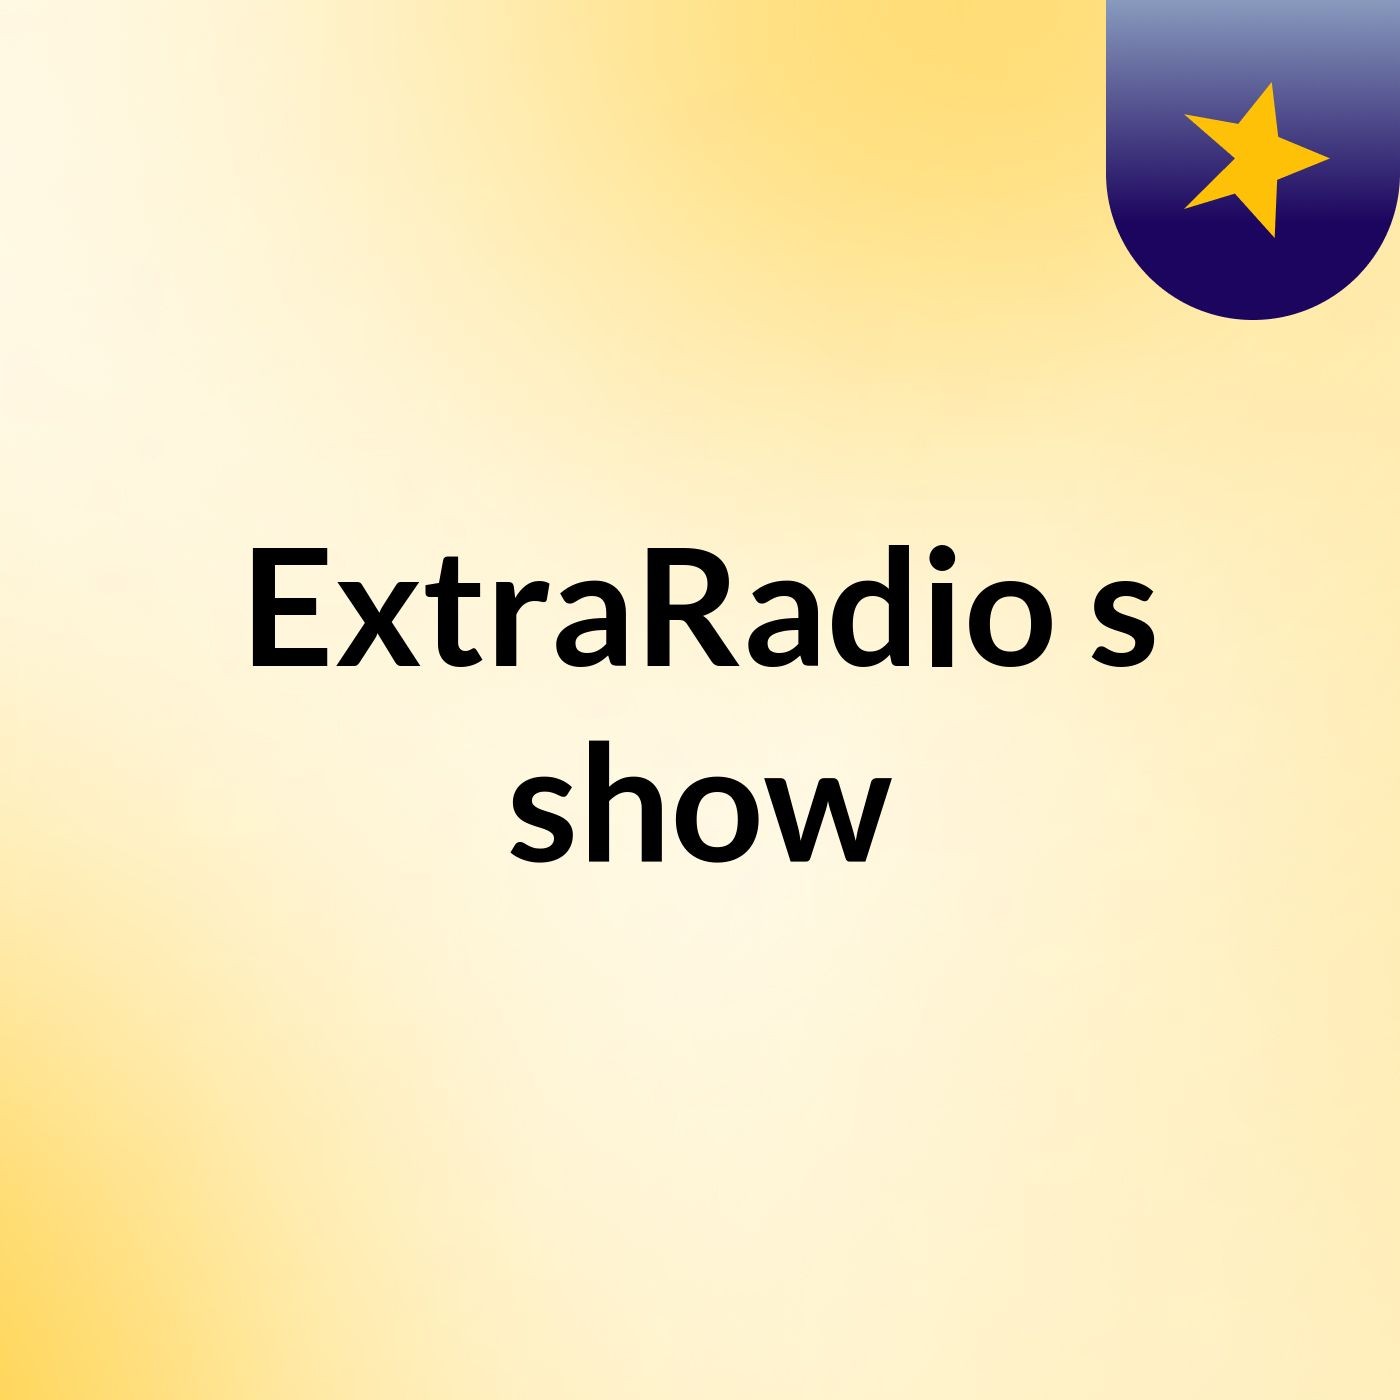 ExtraRadio's show